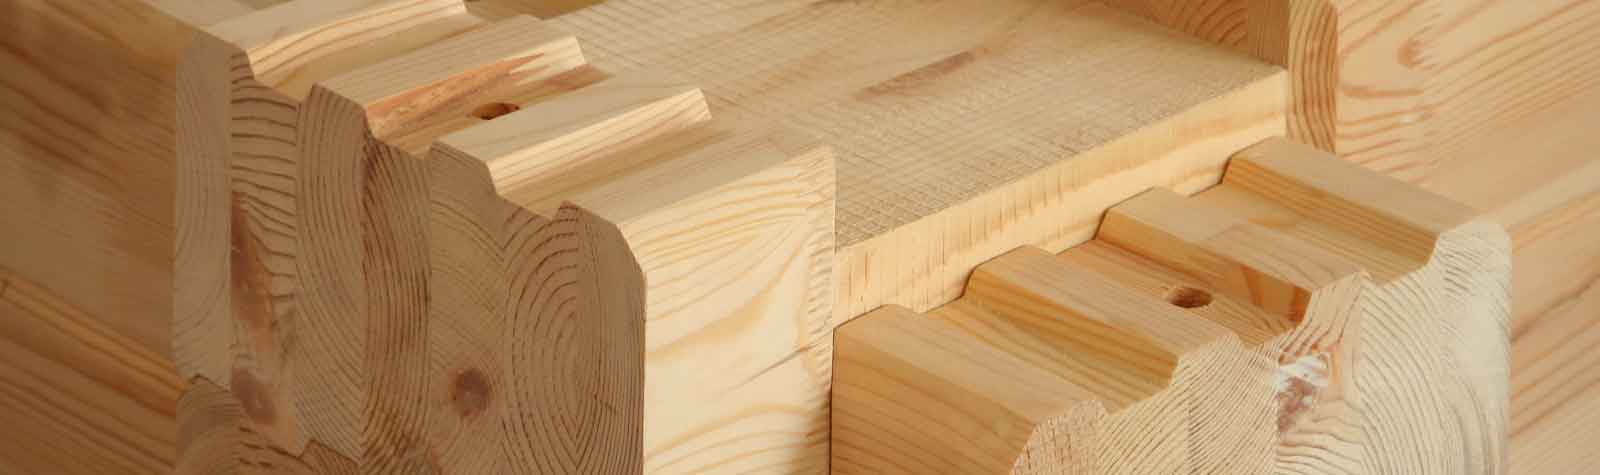 Какие породы дерева используют при строительстве домов